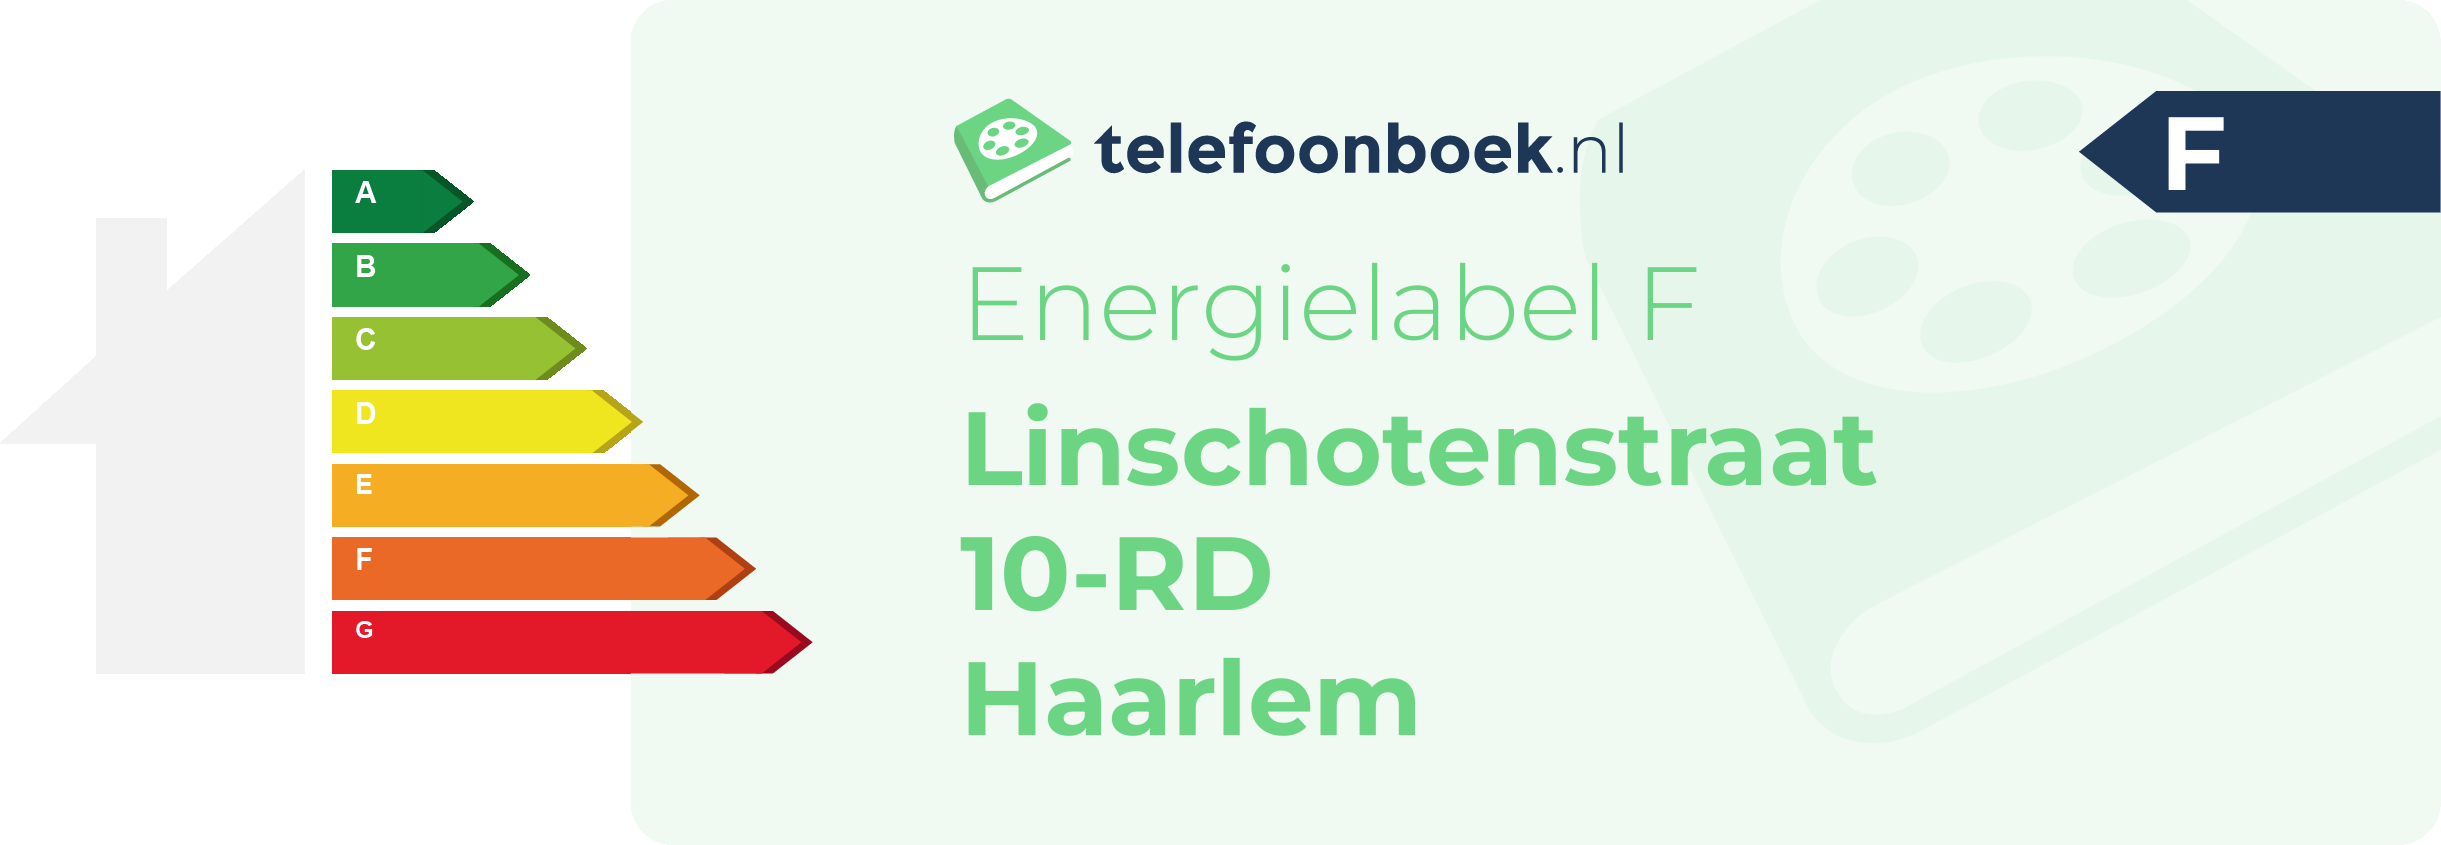 Energielabel Linschotenstraat 10-RD Haarlem